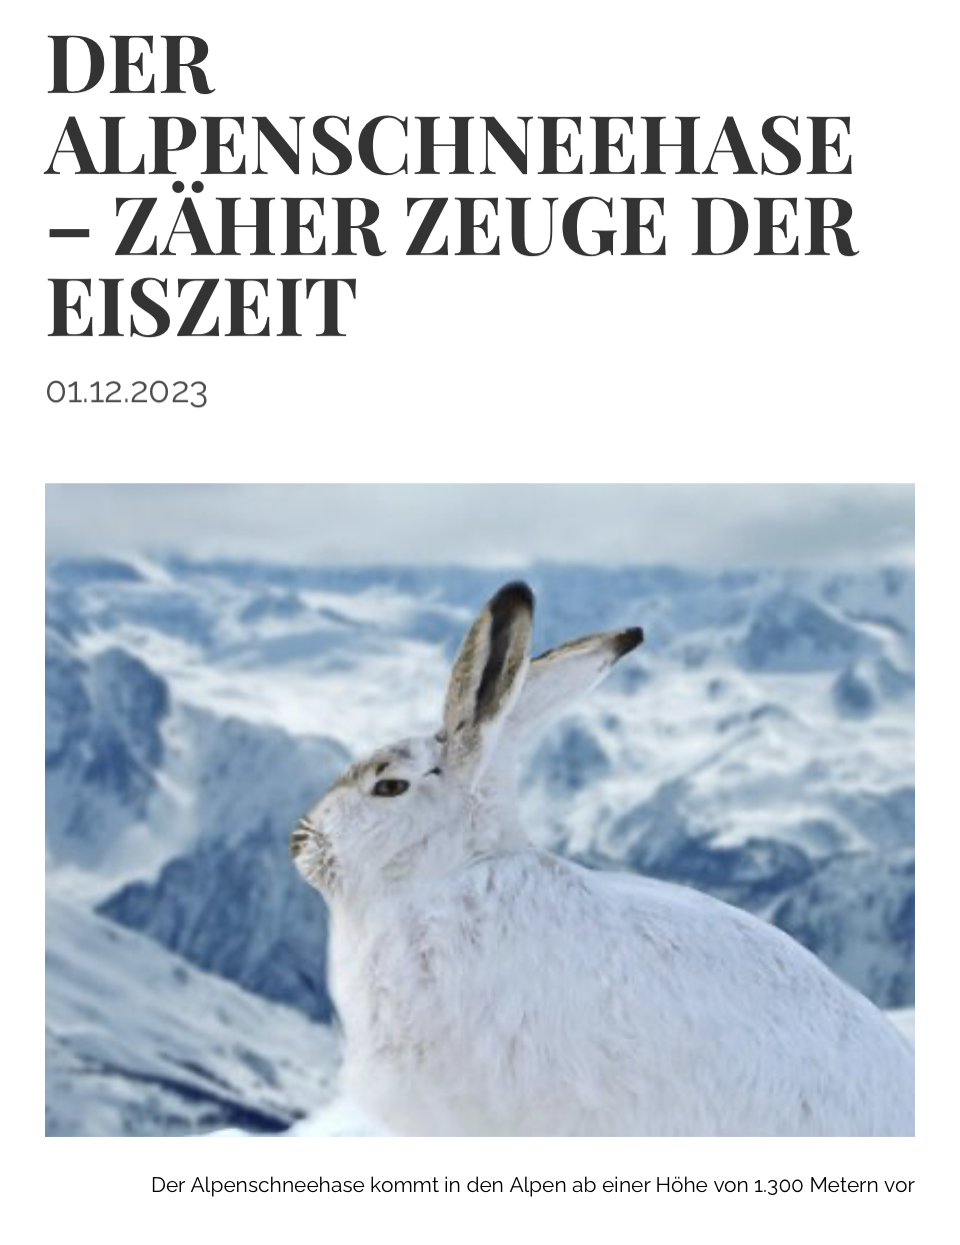 Paulas Artikel “Der Alpenschneehase” ist online